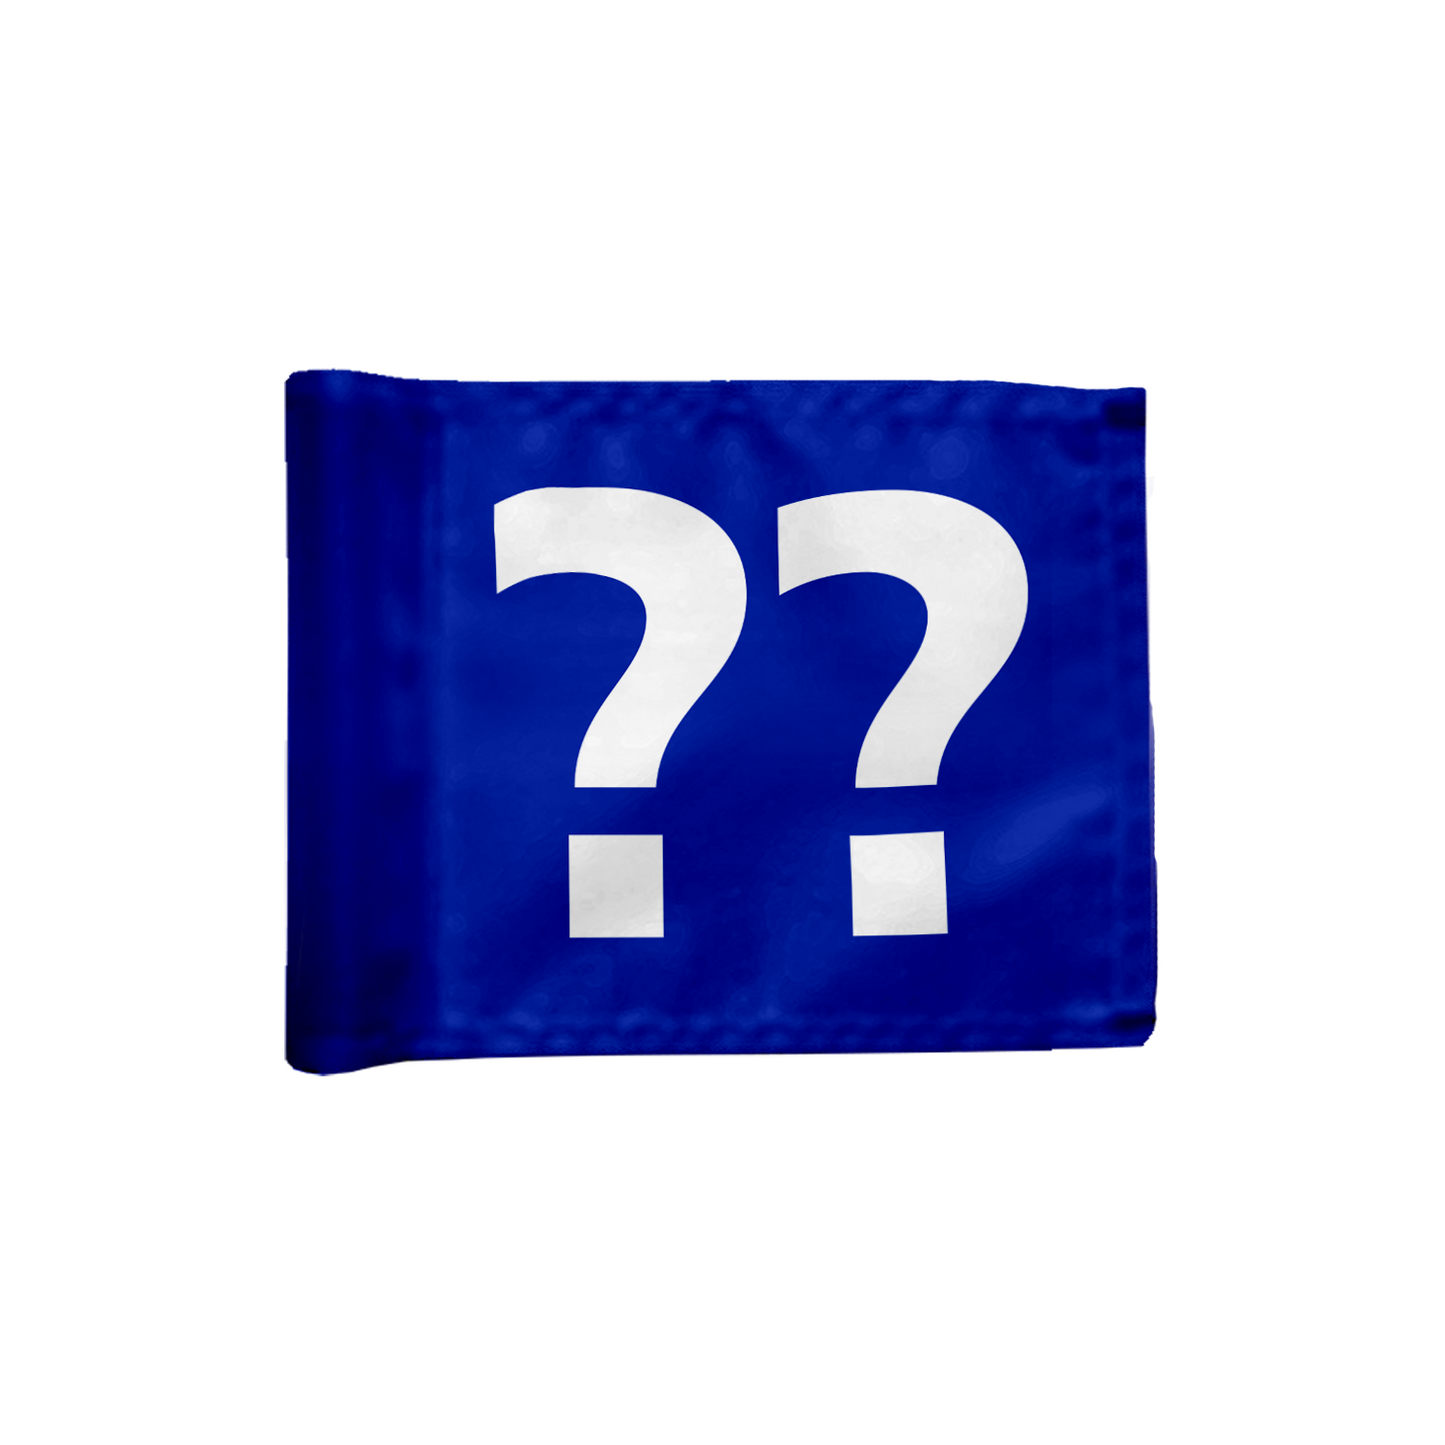 Stykvis puttinggreen flag enkeltsidet i blå med valgfrit hulnummer, 200 gram flagdug